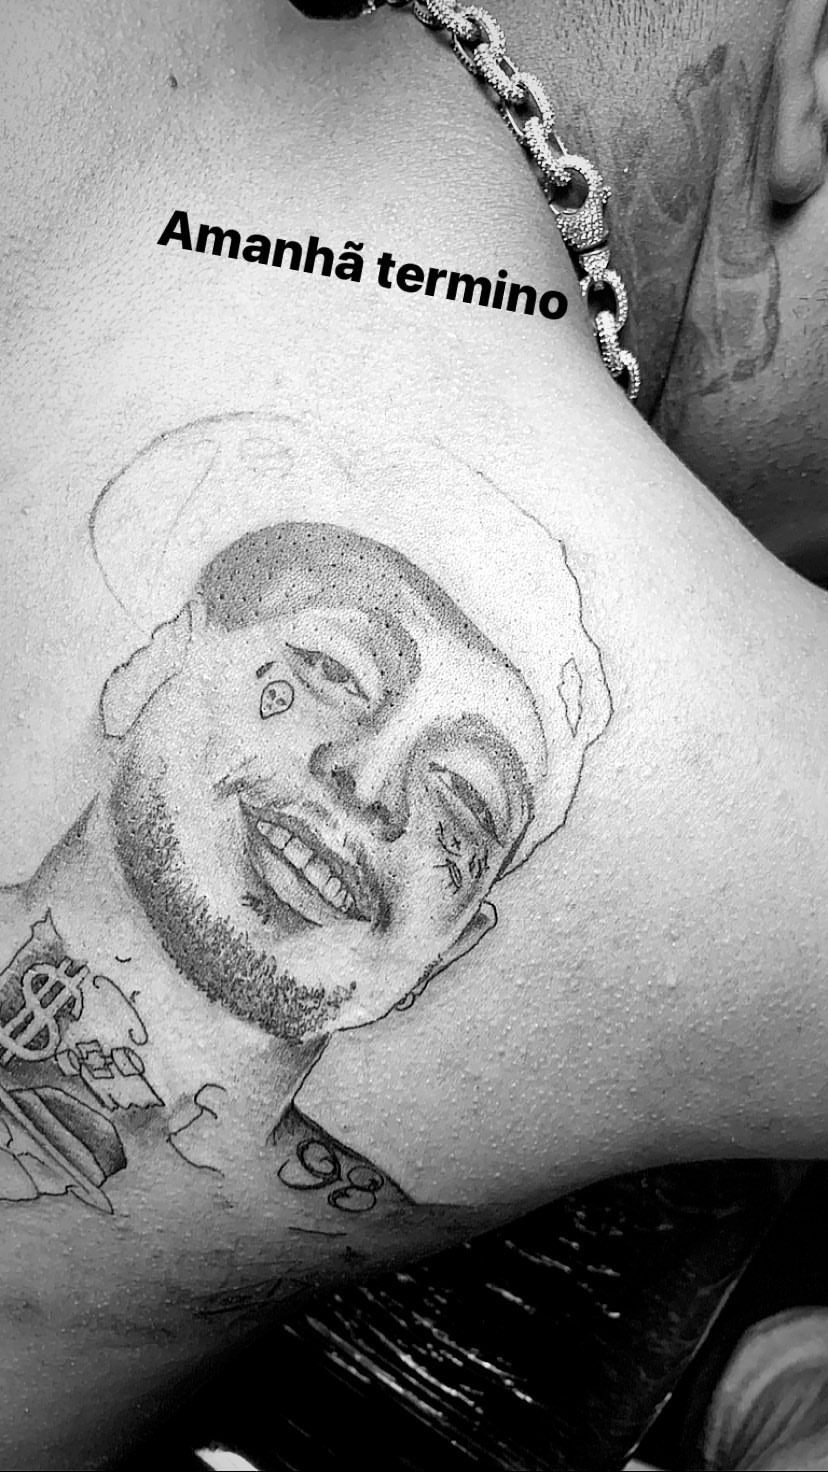 MC Brinquedo tatua rosto de MC Kevin nas costas (Foto: Reprodução)